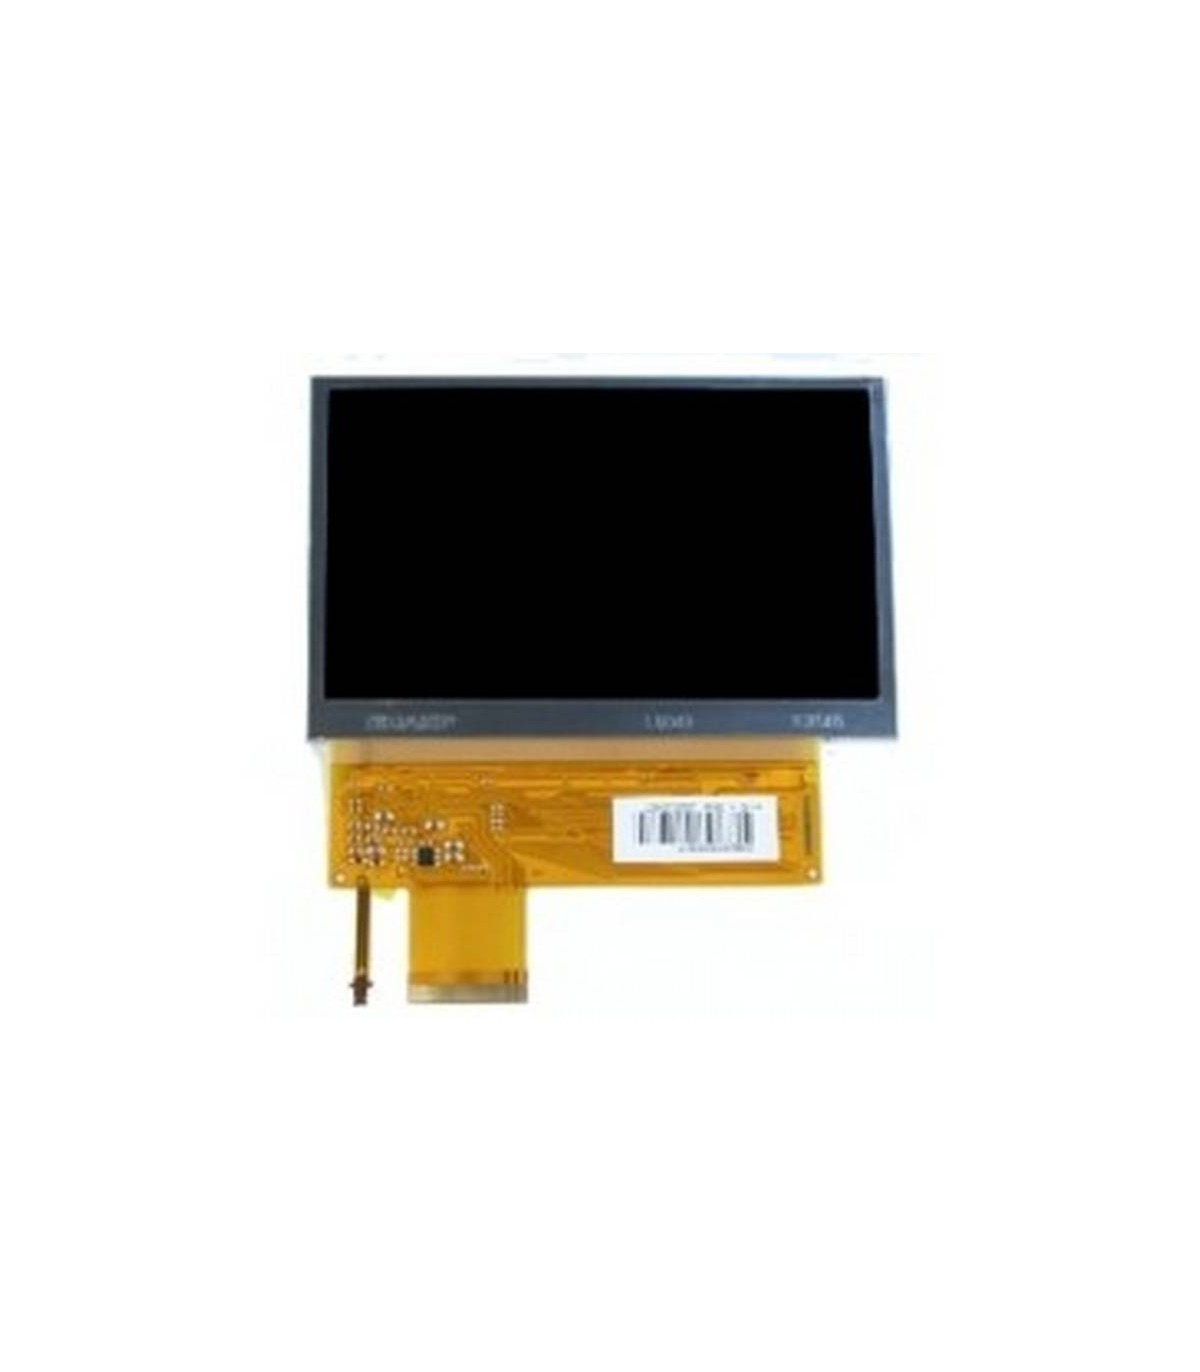 PSP 1000 Pantalla TFT LCD + BackLight